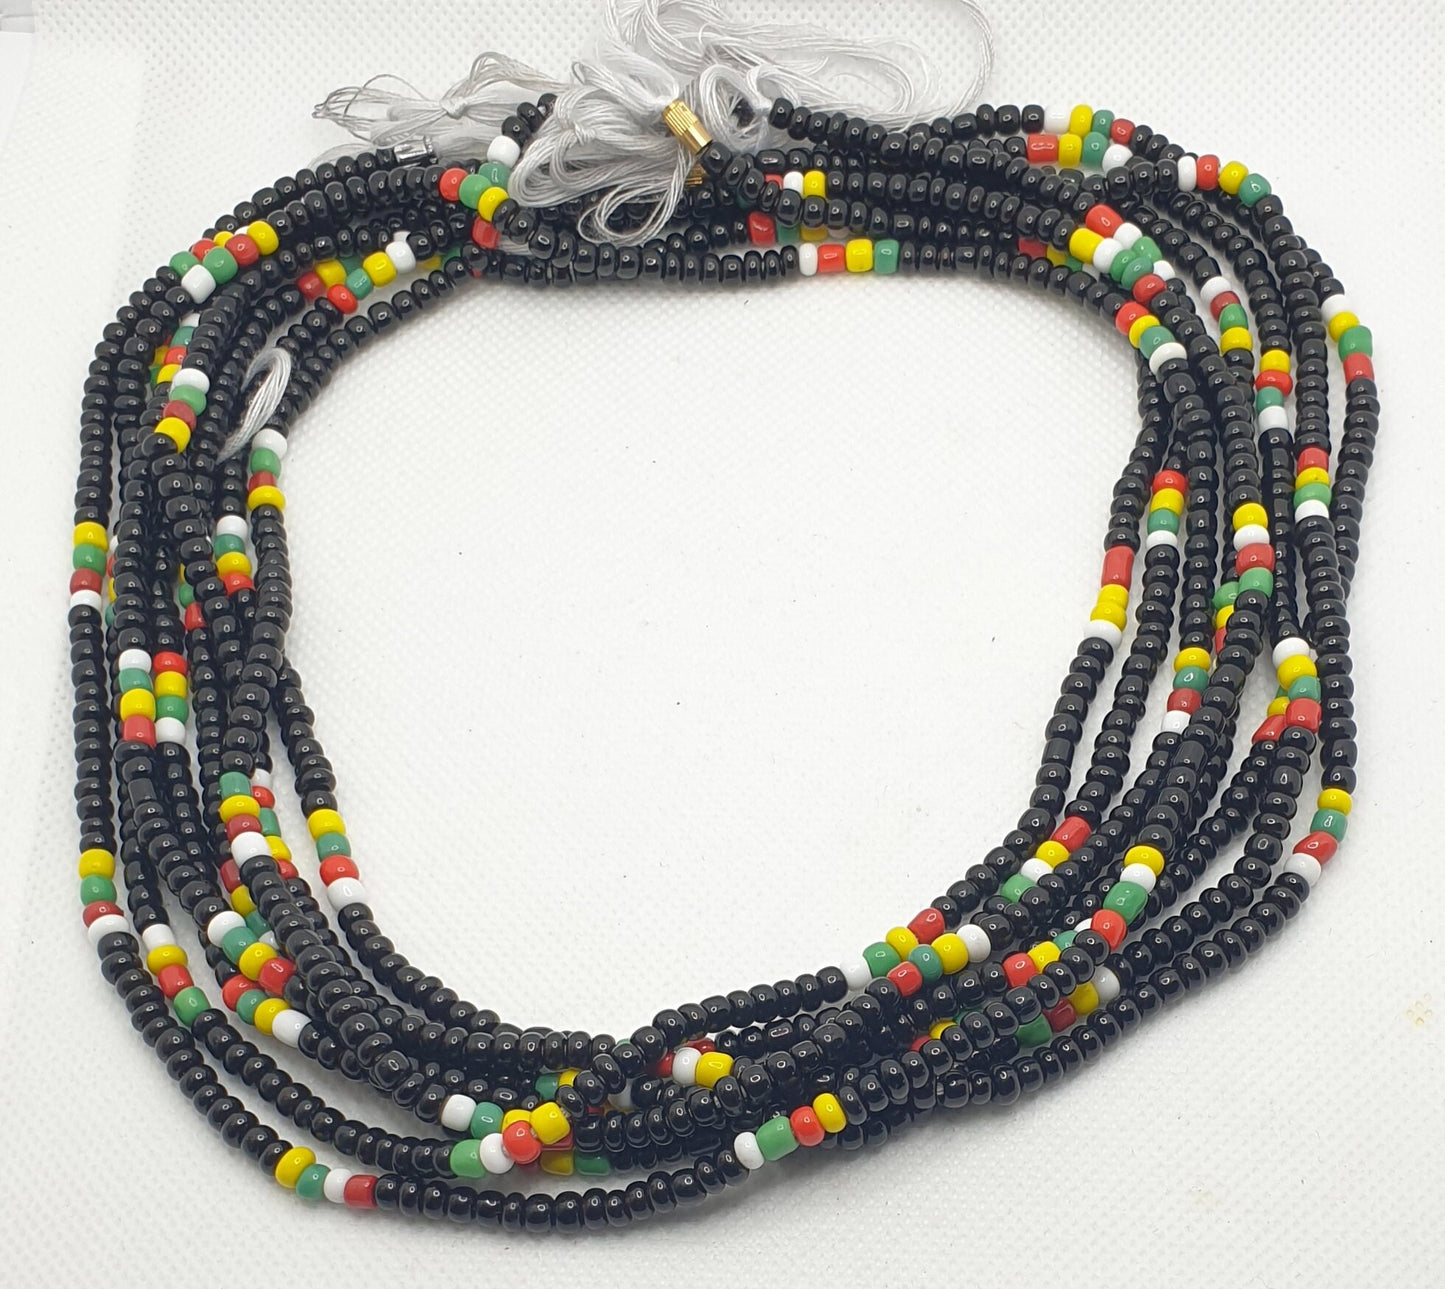 Waist Bead|Belly Chain|weight loss beads|Weight control beads|African Waist bead|Multi coloured African waist Bead